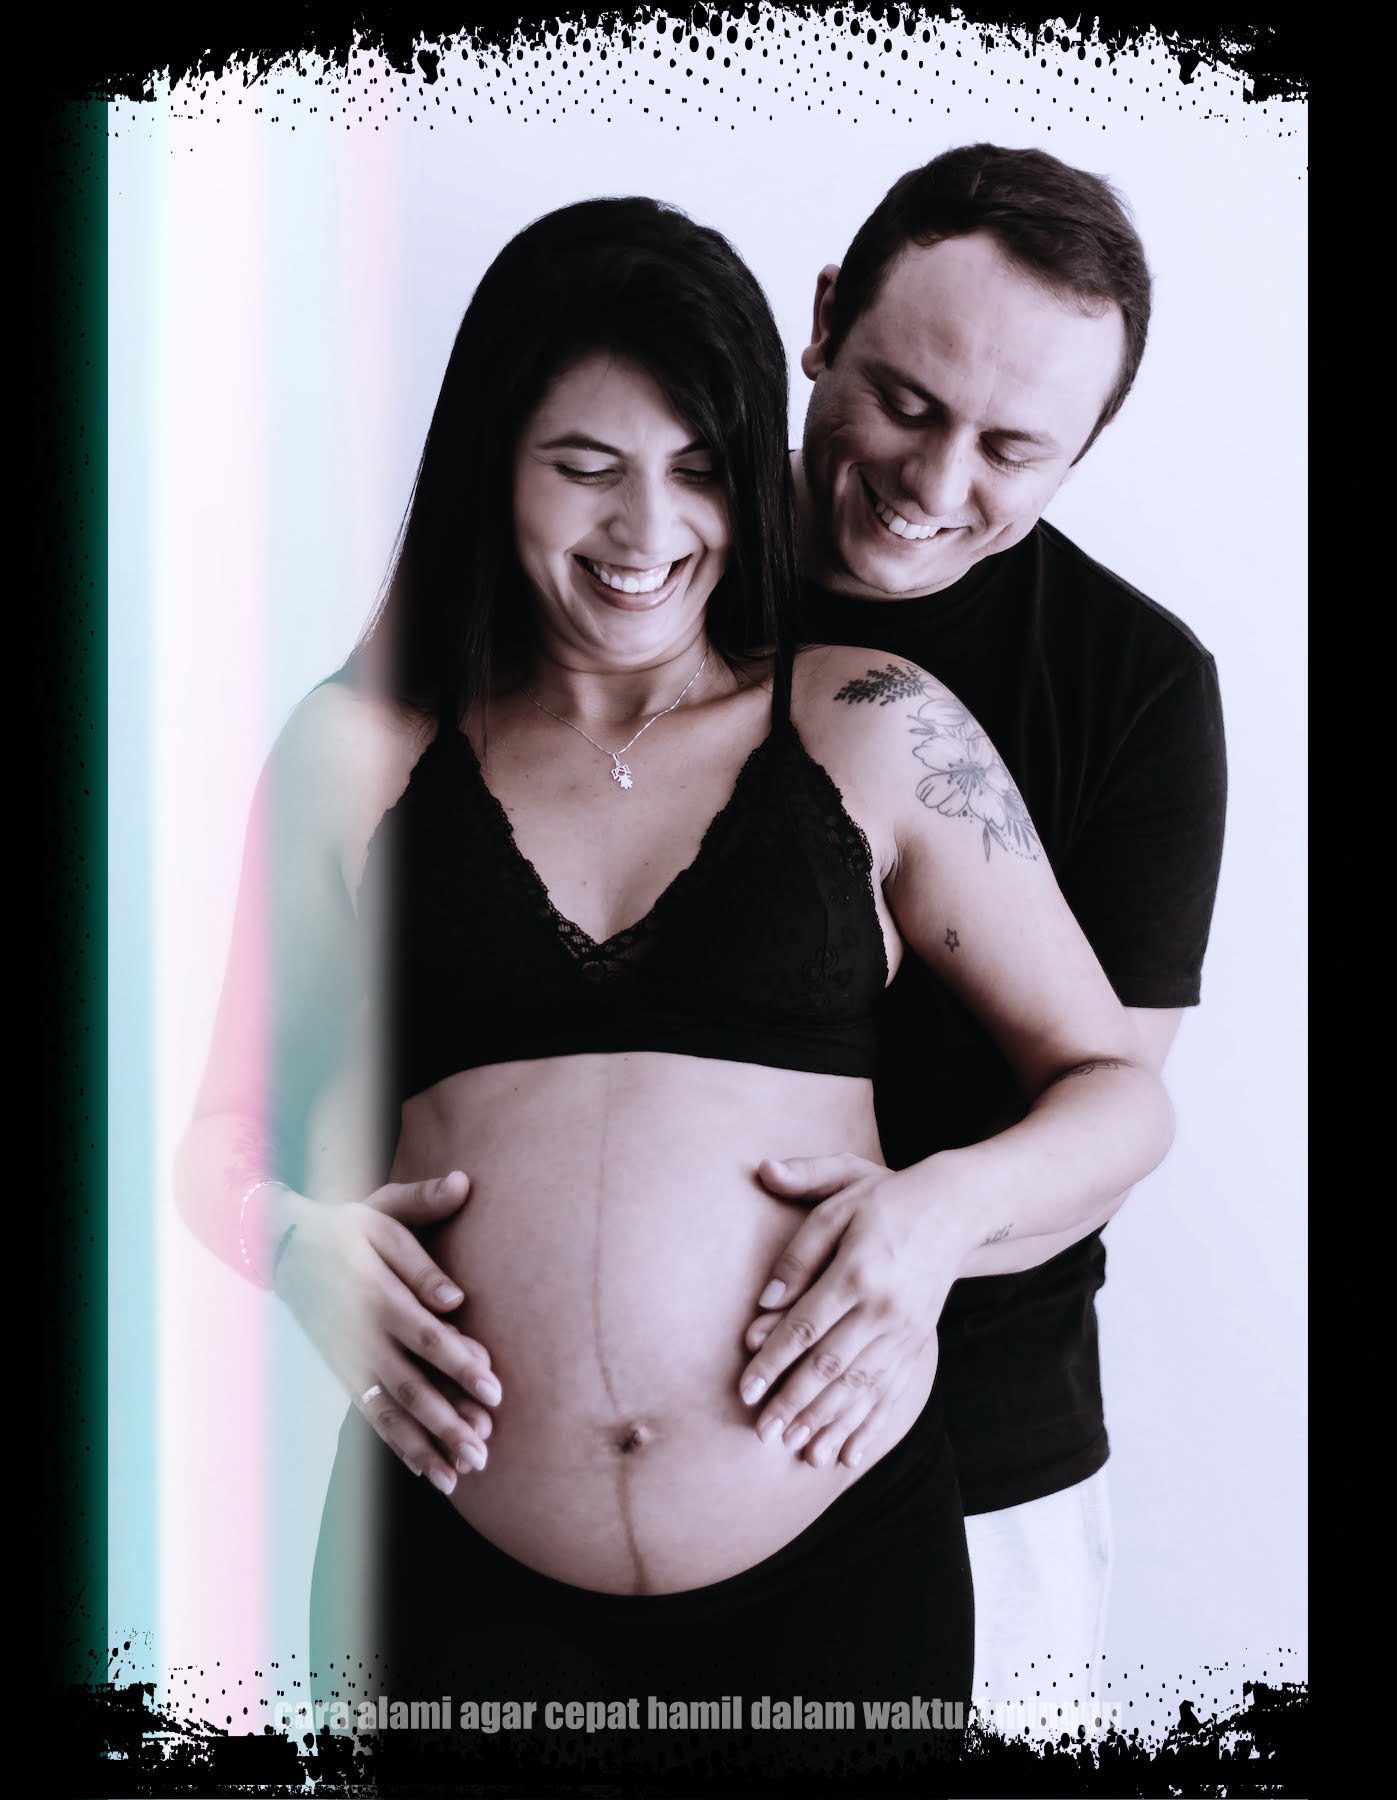 cara alami agar cepat hamil dalam waktu 1 minggu image